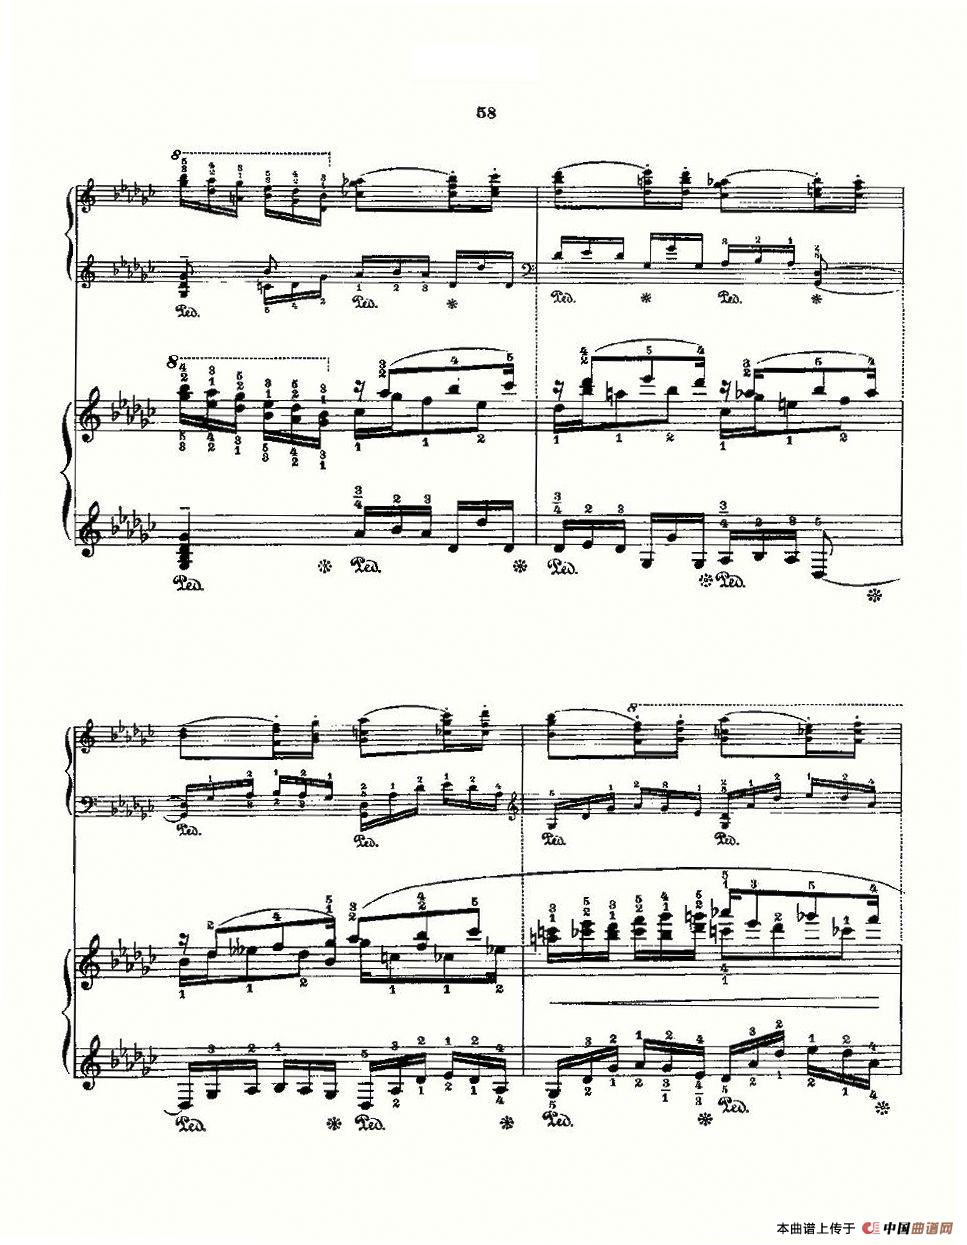 《肖邦《练习曲》Fr.Chopin Op.10 No5 & Op.25 No9》钢琴曲谱图分享